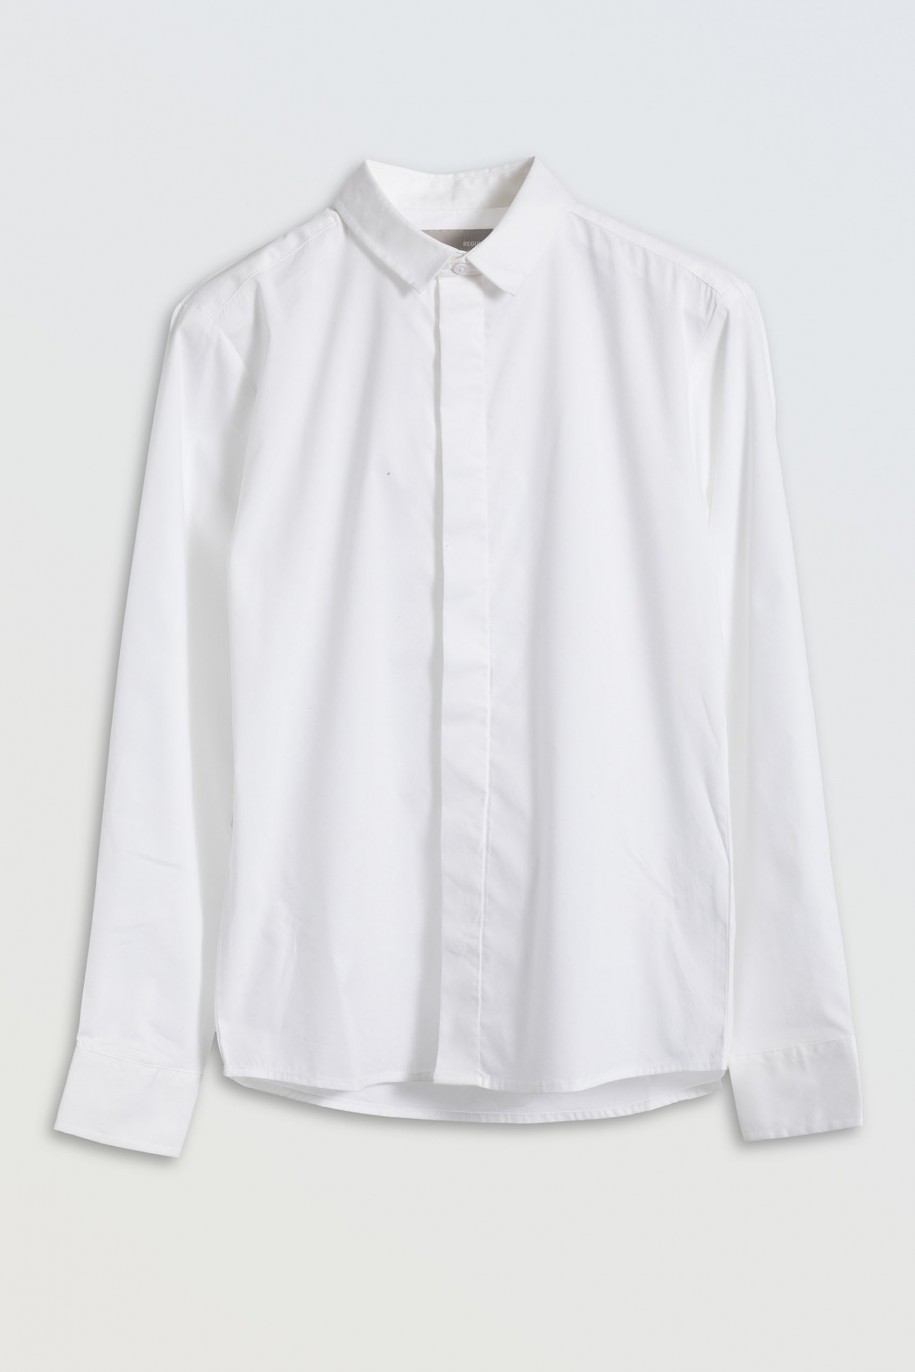 Biała koszula z długim rękawem zapinana na guziki - 45855